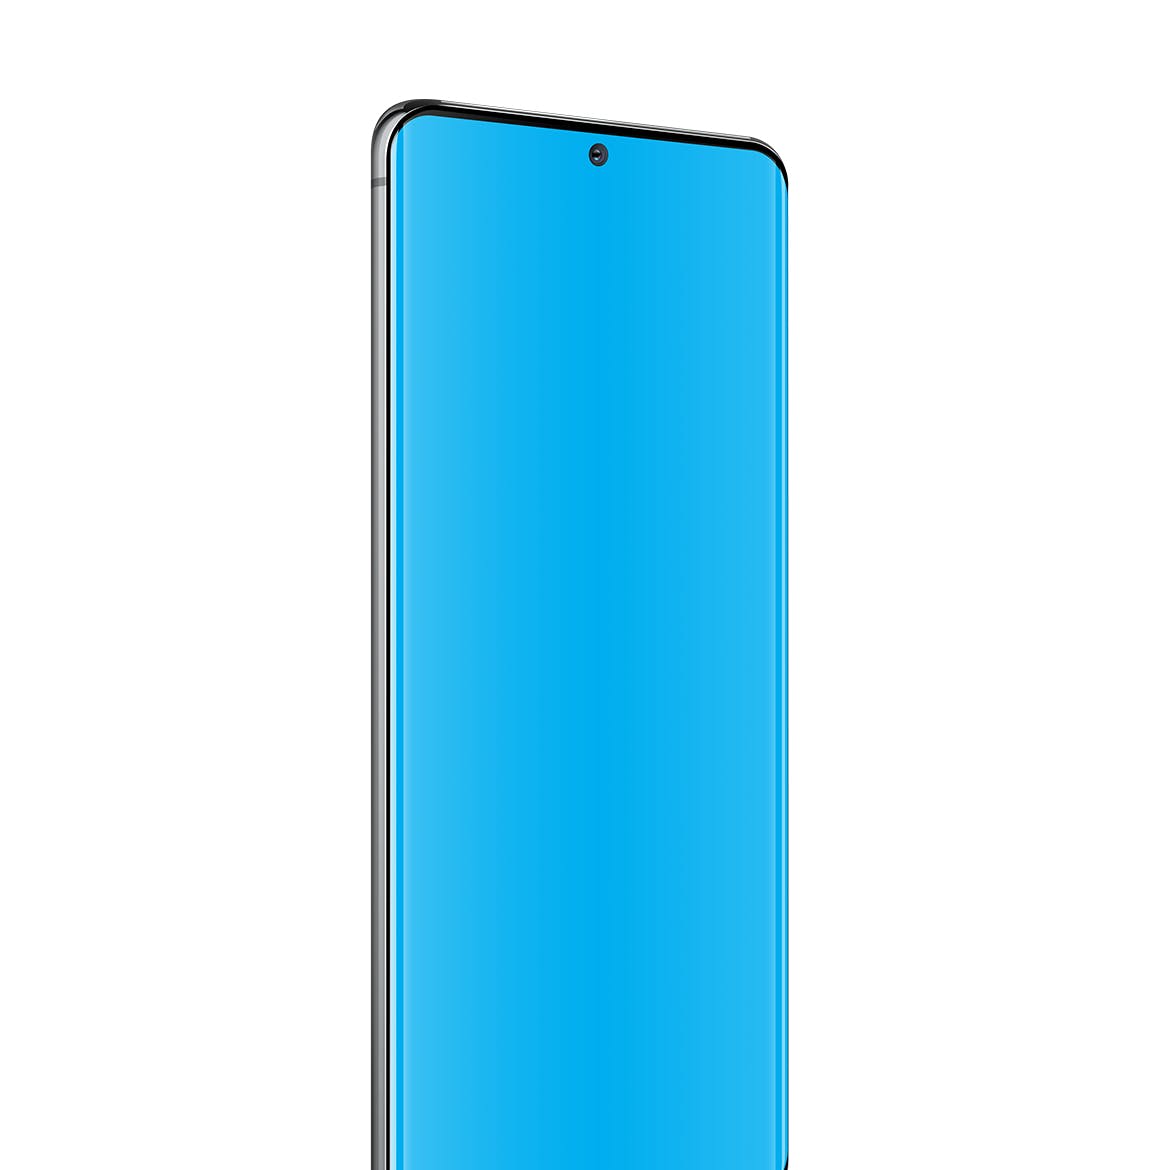 三星Galaxy S20 Ultra智能手机UI设计屏幕预览16图库精选样机 S20 Ultra Layered PSD Mockups插图(3)